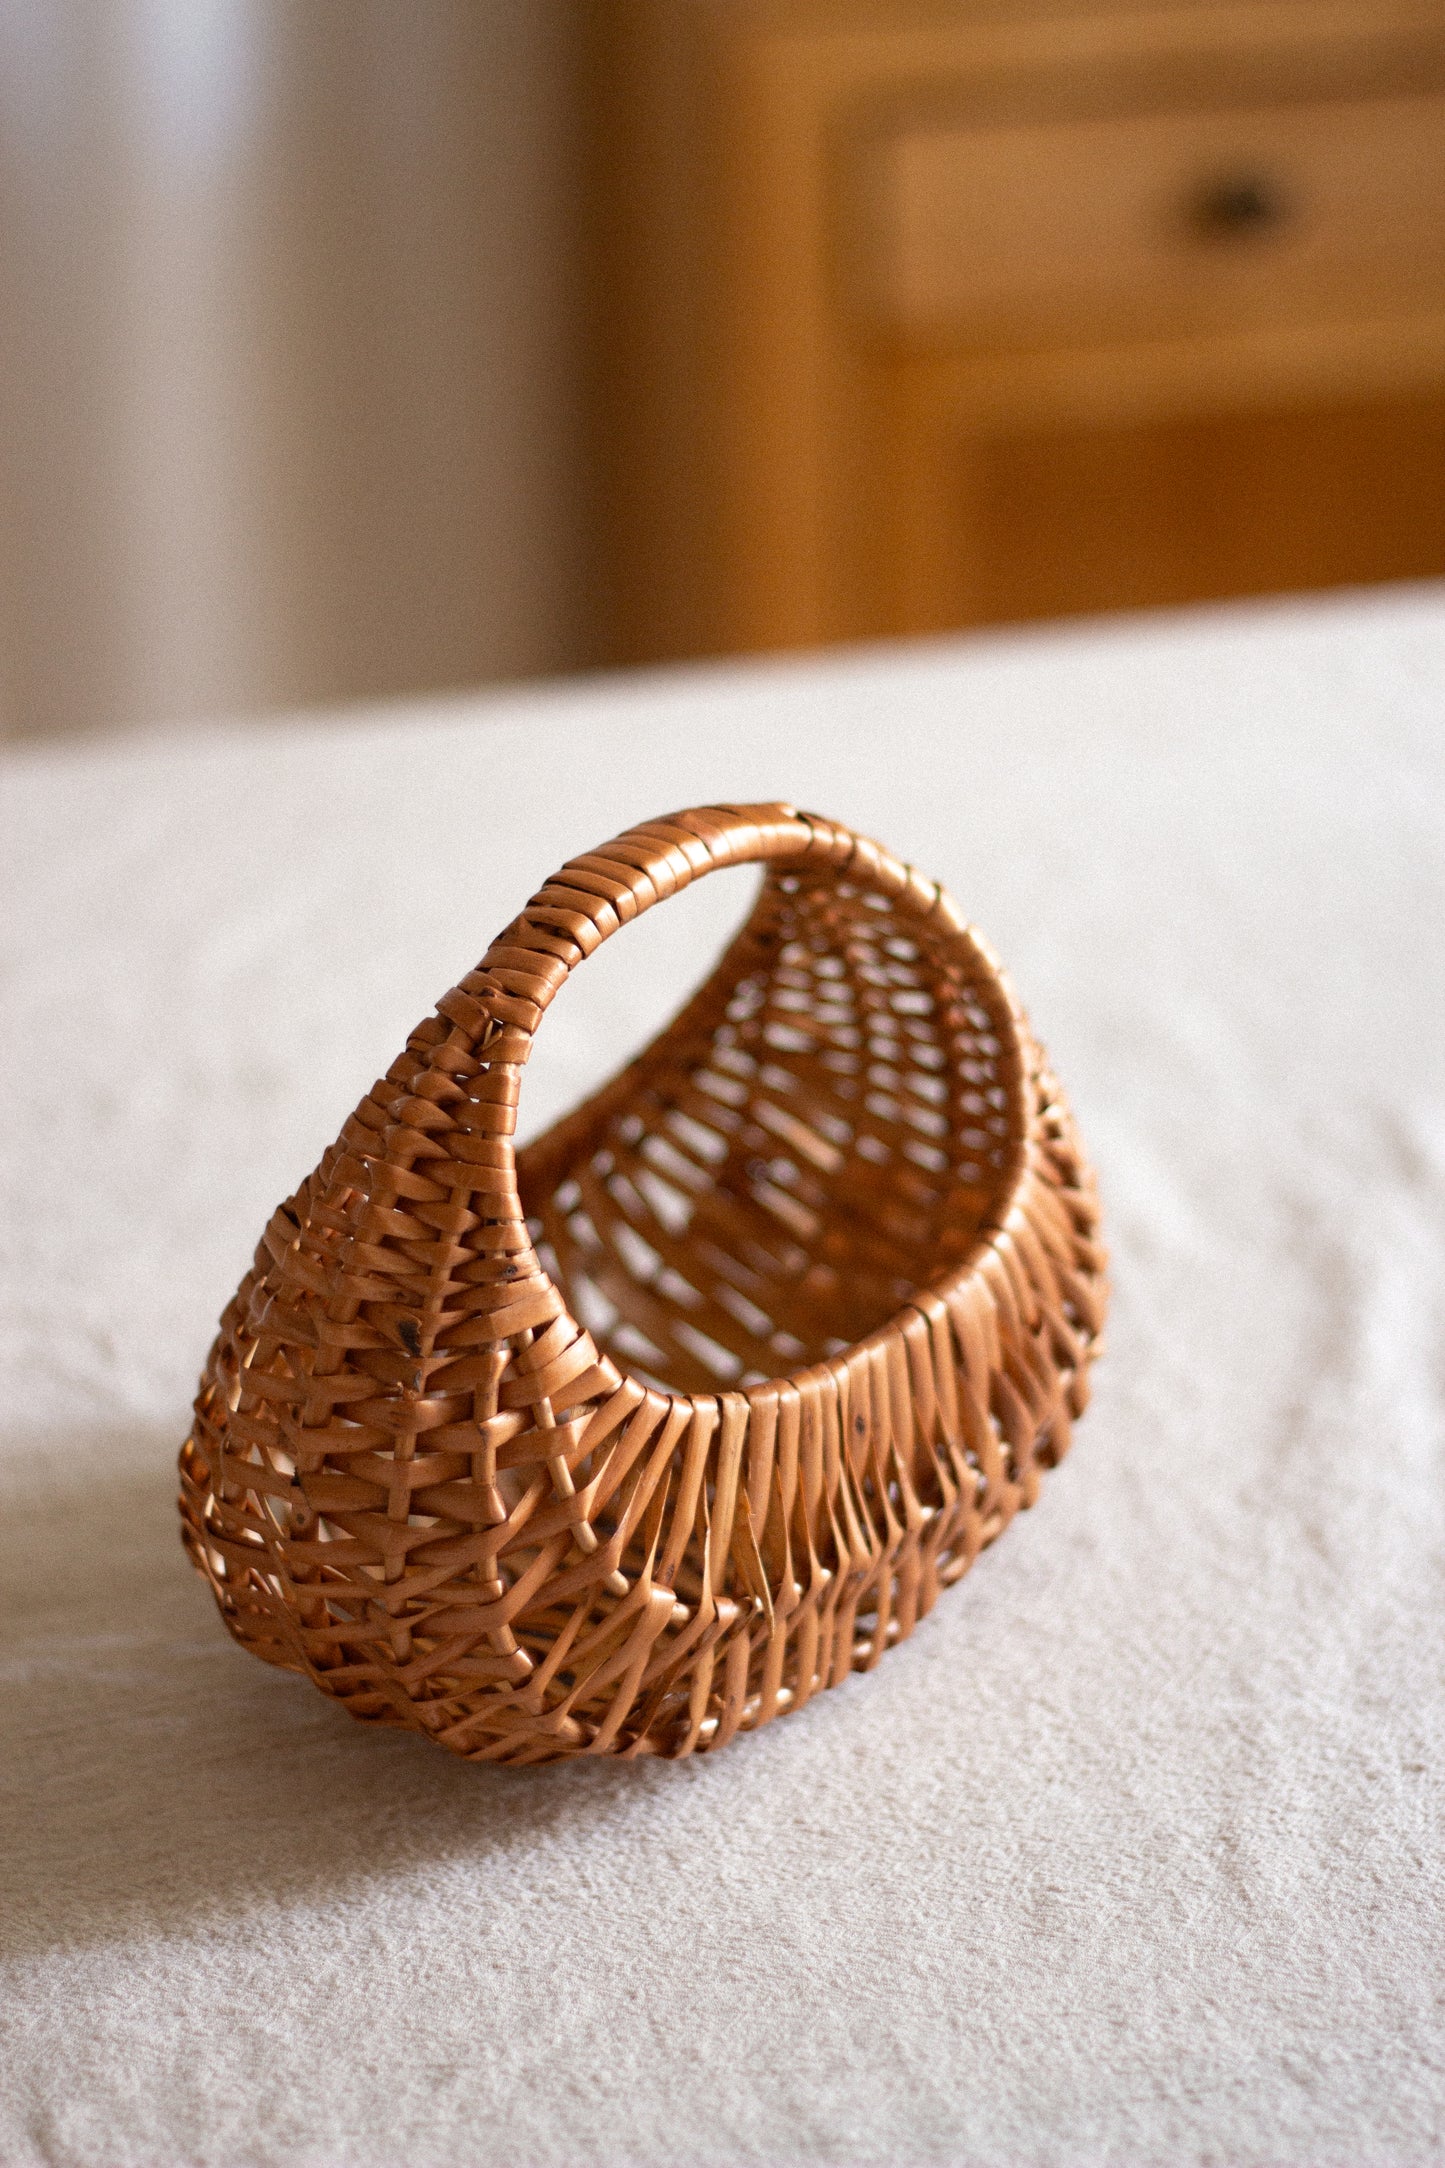 Mini Hanging Basket